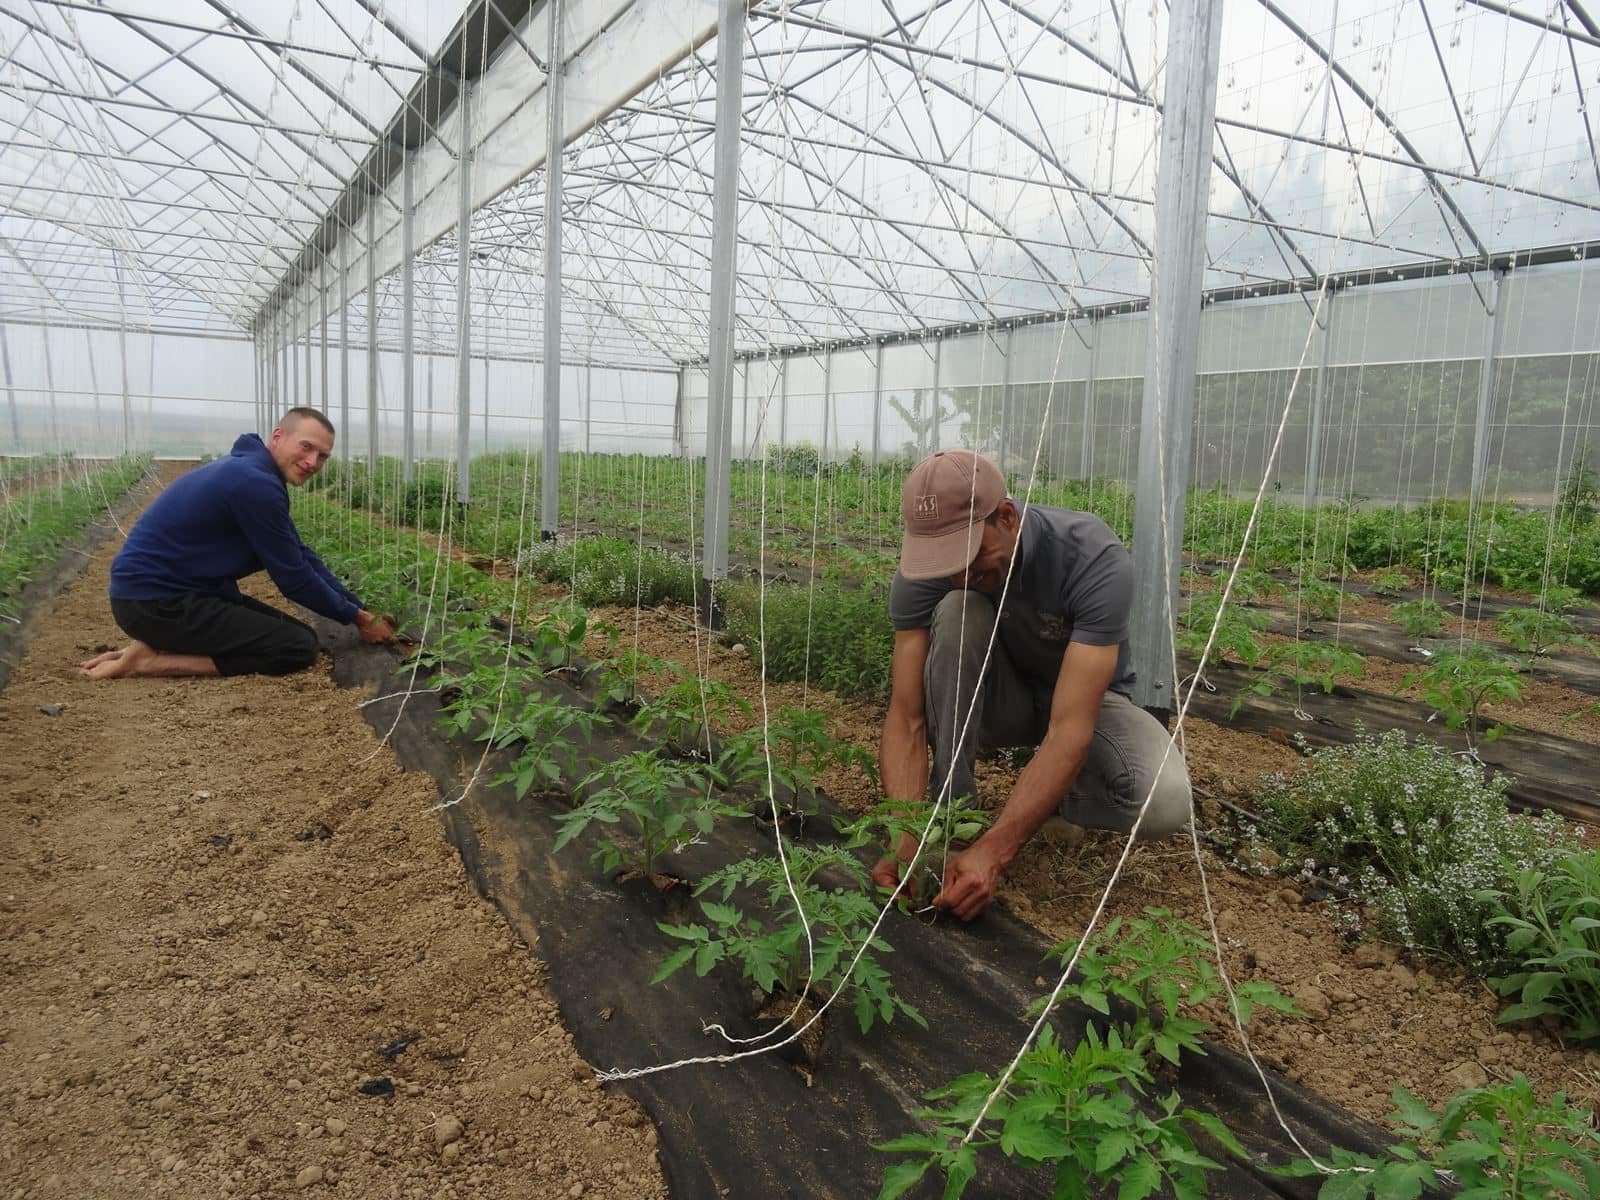 Comment la ferme Herrmann pratique une agriculture bio et rentable